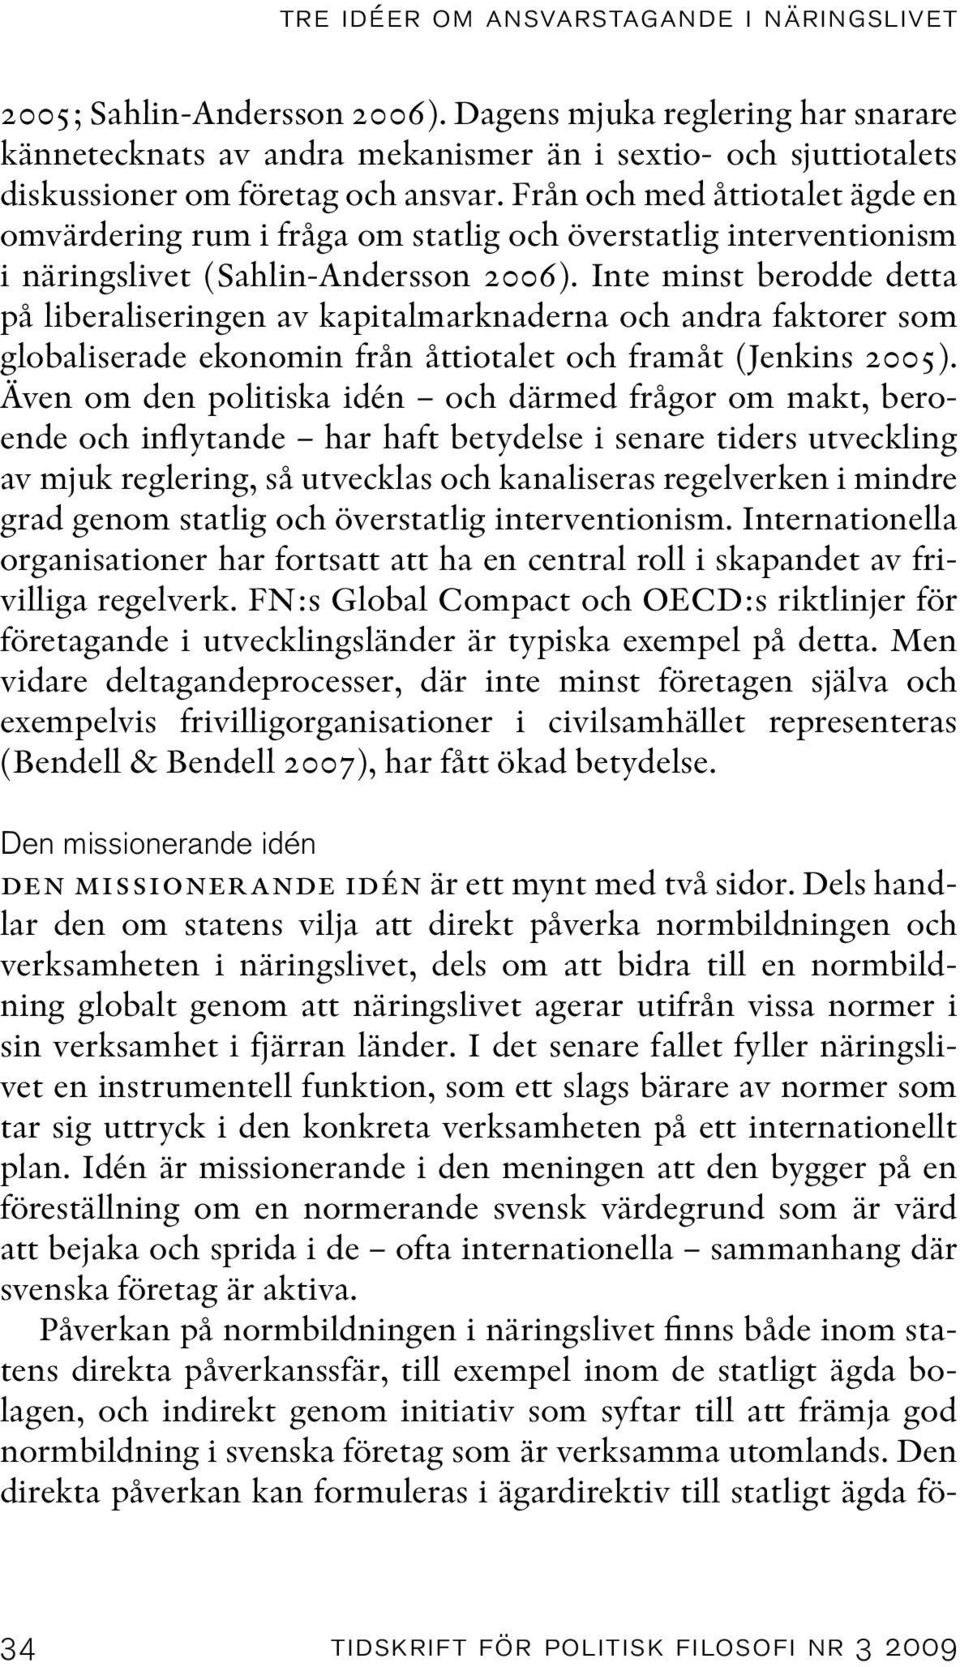 Från och med åttiotalet ägde en omvärdering rum i fråga om statlig och överstatlig interventionism i näringslivet (Sahlin-Andersson 2006).